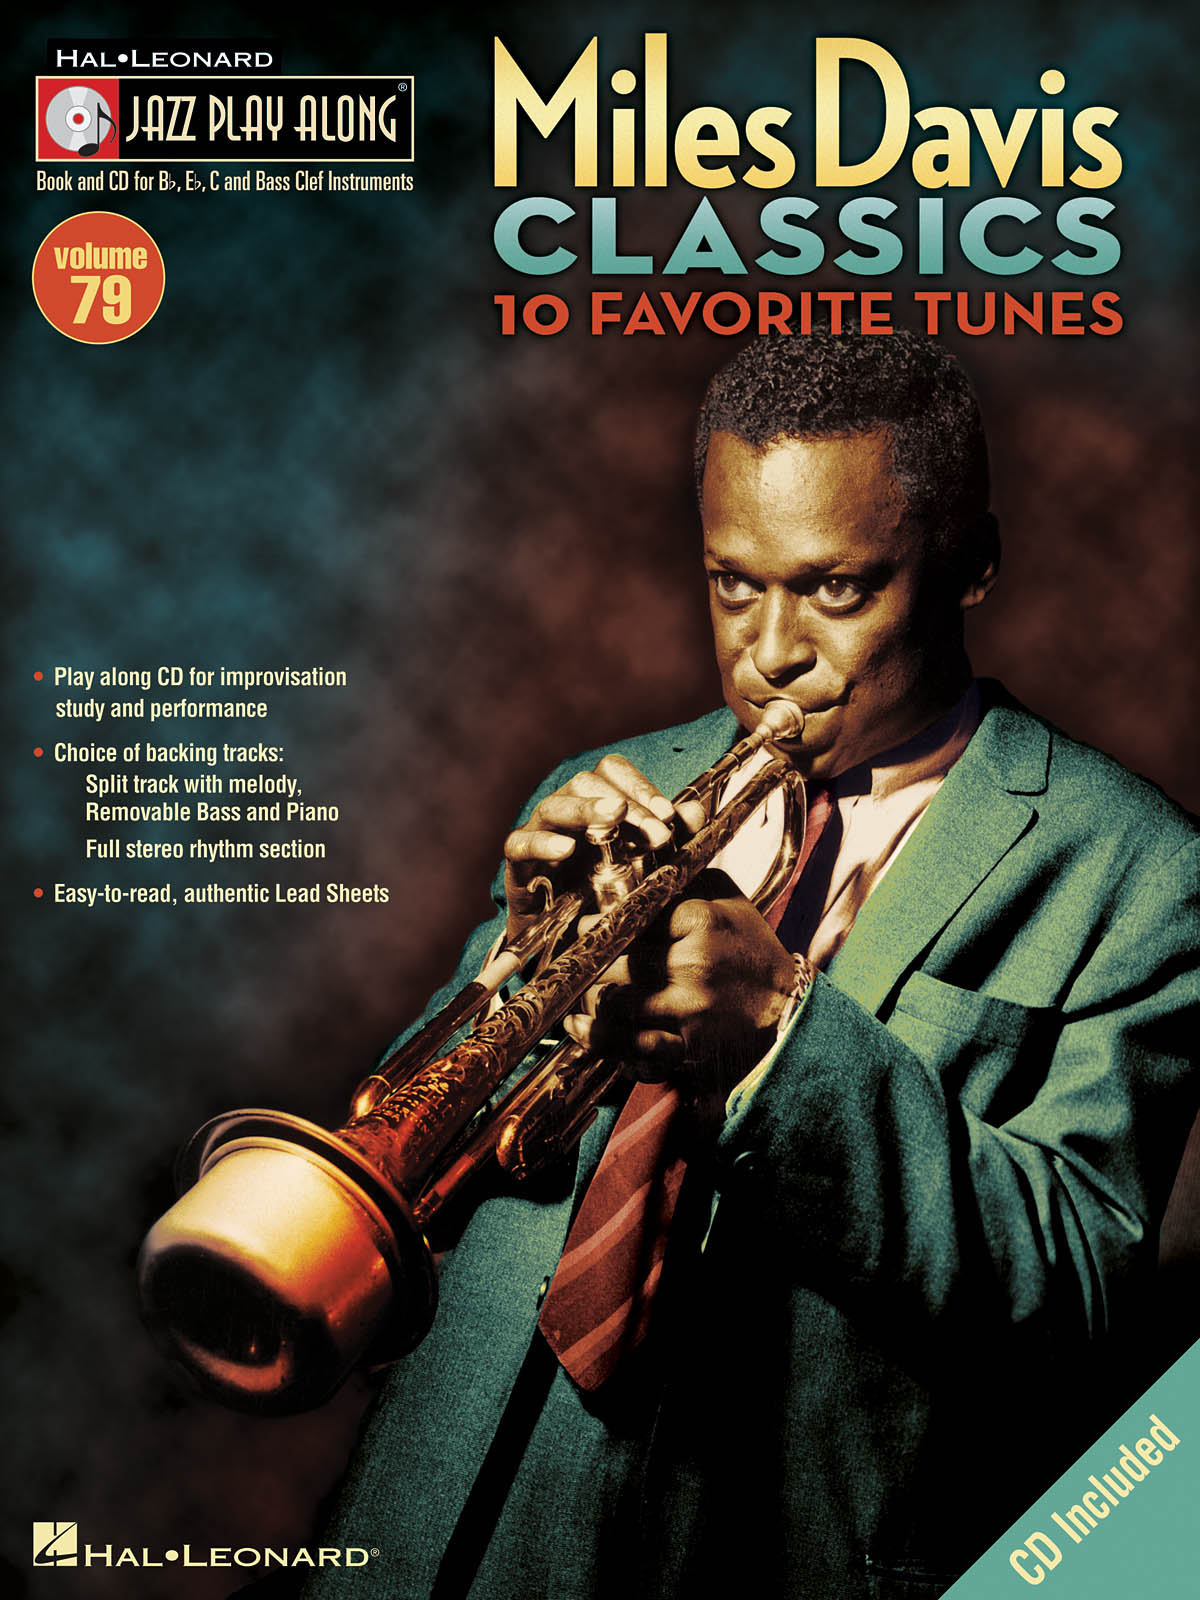 Miles Davis Classics - Jazz Play-Along Volume 79 - noty pro nástroje v ladění C